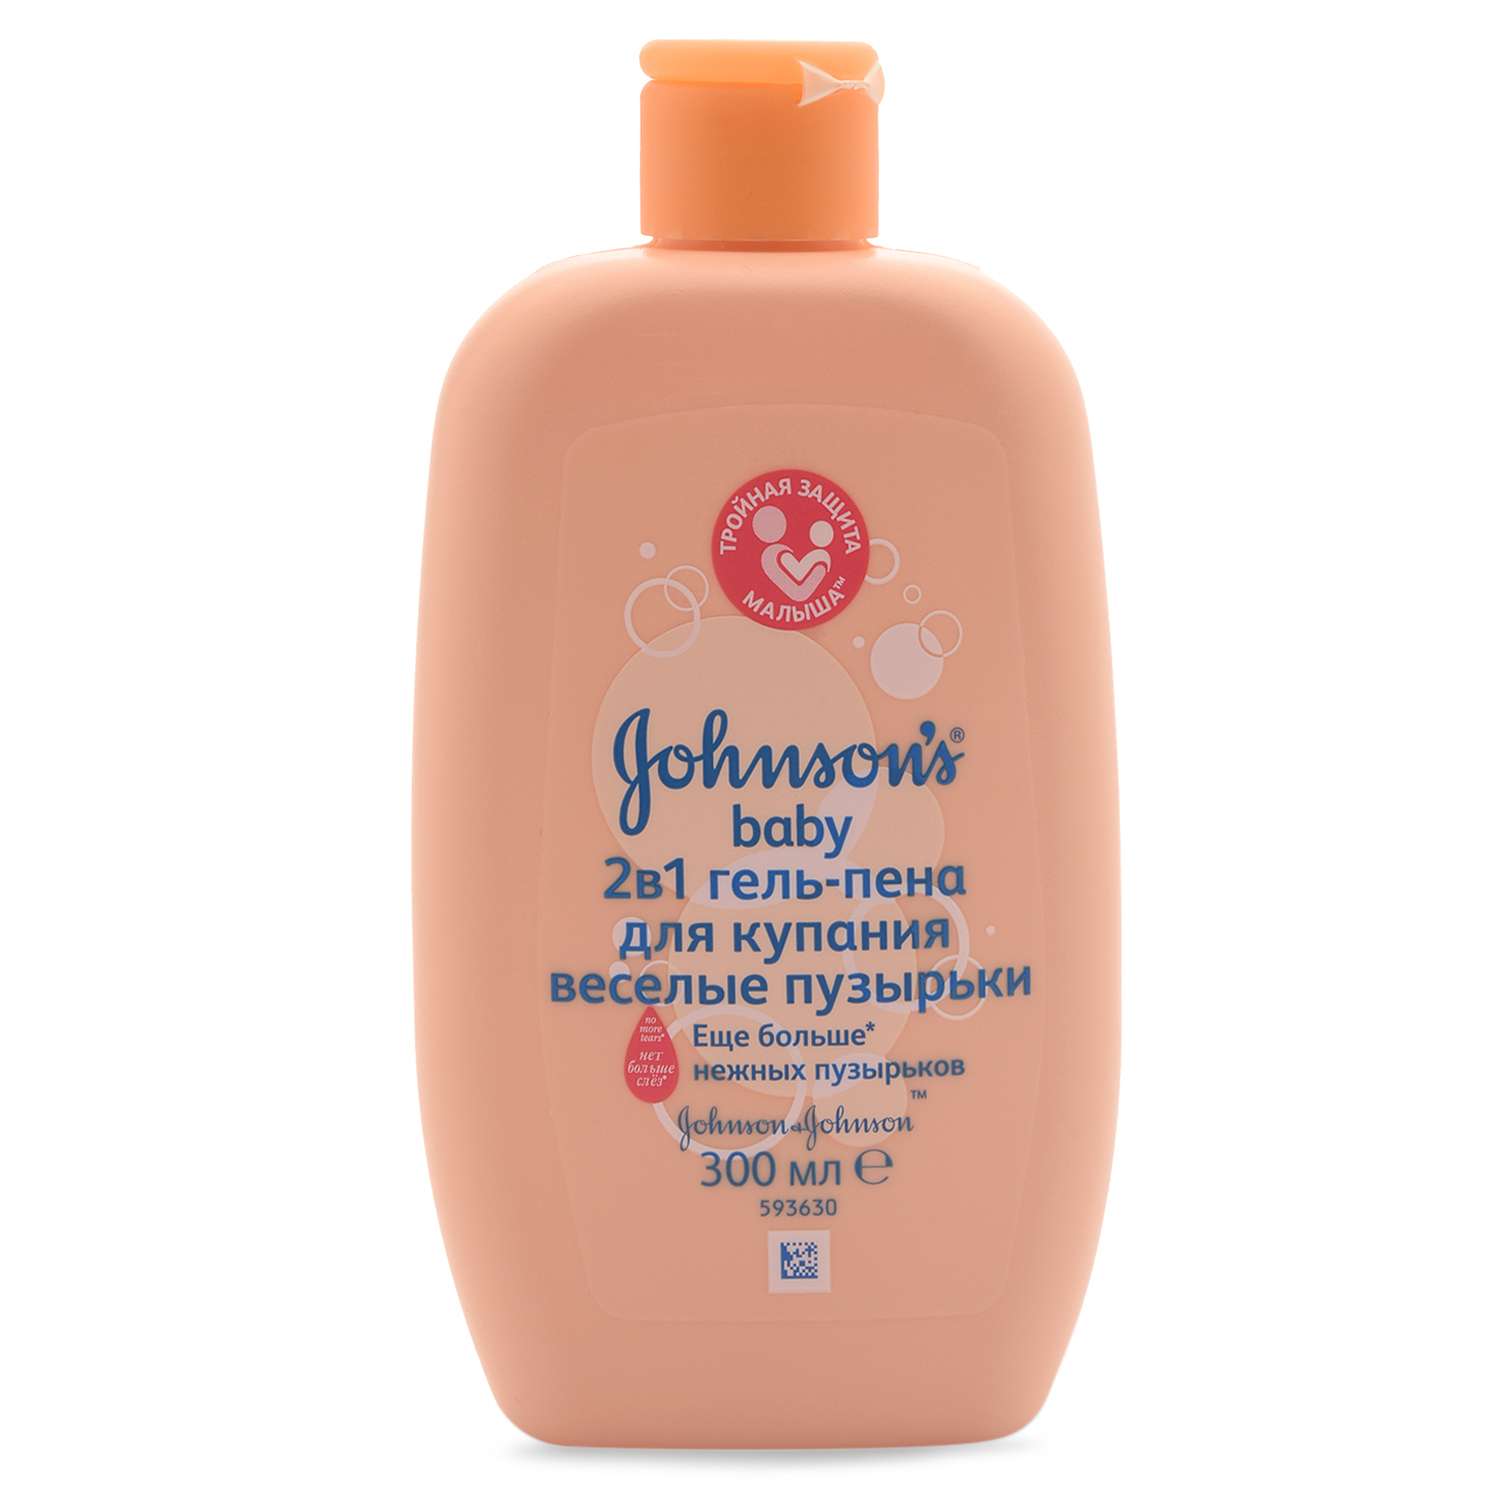 Набор подарочный Johnson's Веселые пузырьки шампунь для волос 300мл и гель-пена для купания 2в1 300мл - фото 5